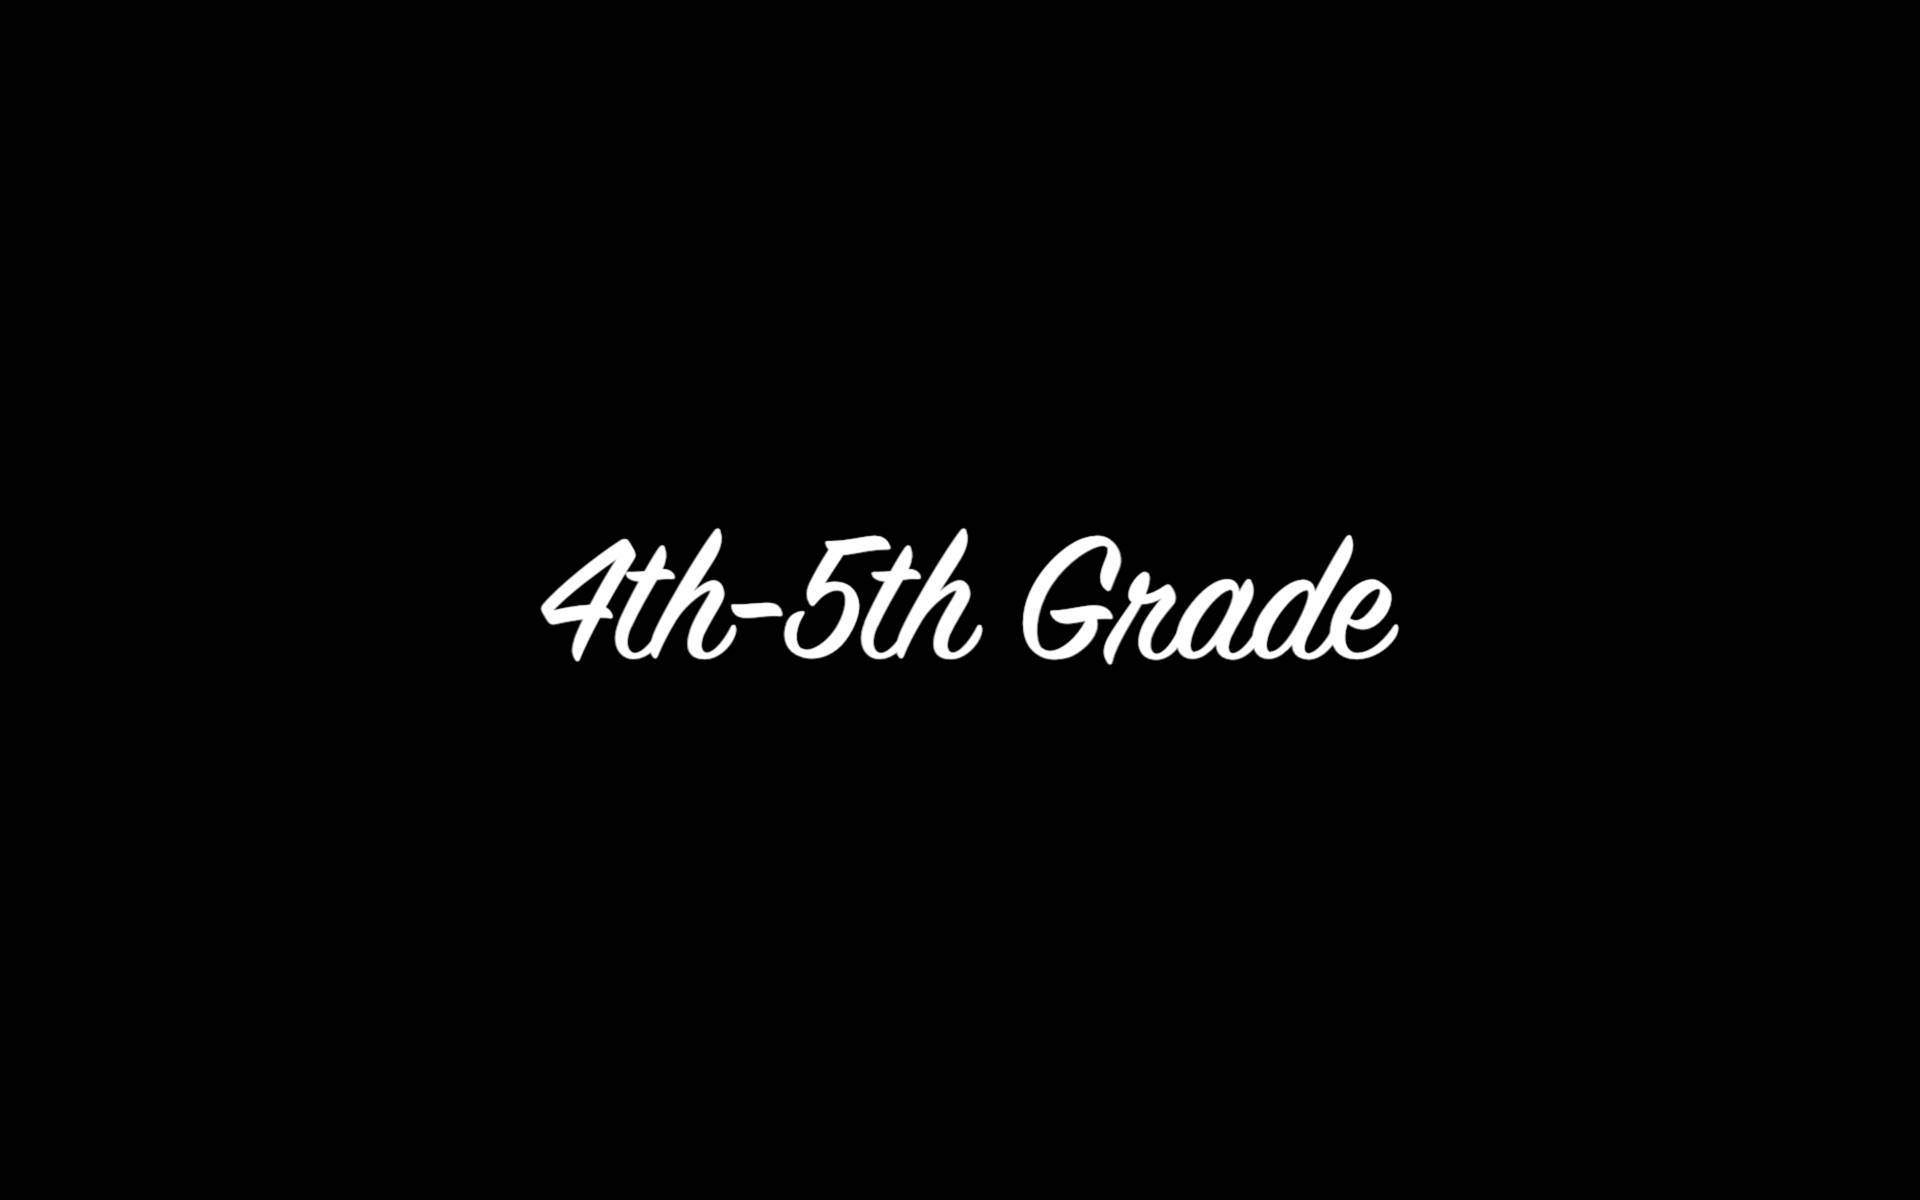 4th-5th Grade